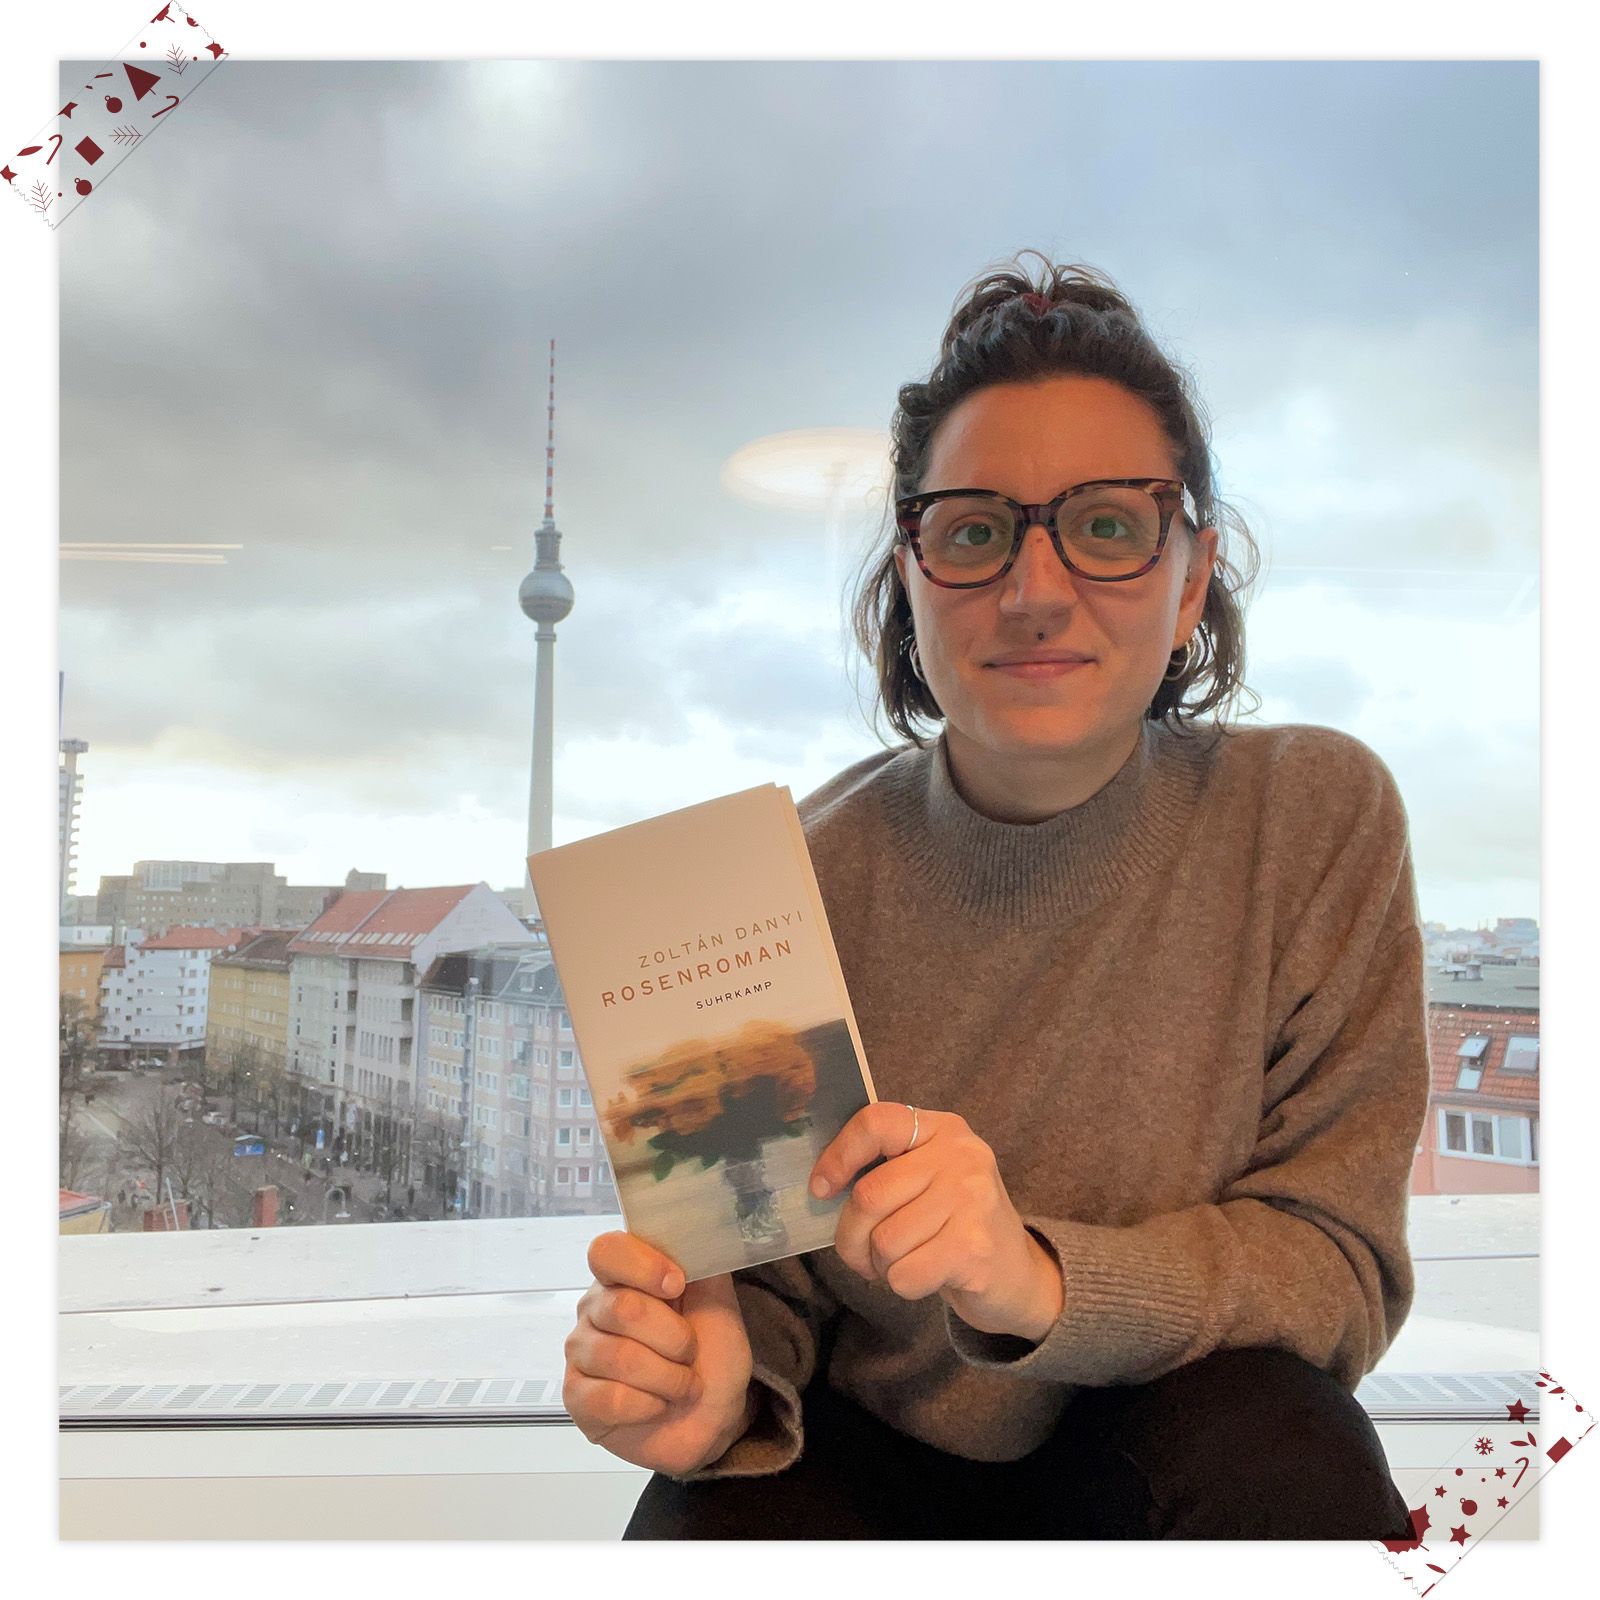 Elena Cascio (Rechte & Lizenzen) empfiehlt »Rosenroman« von Zoltán Danyi